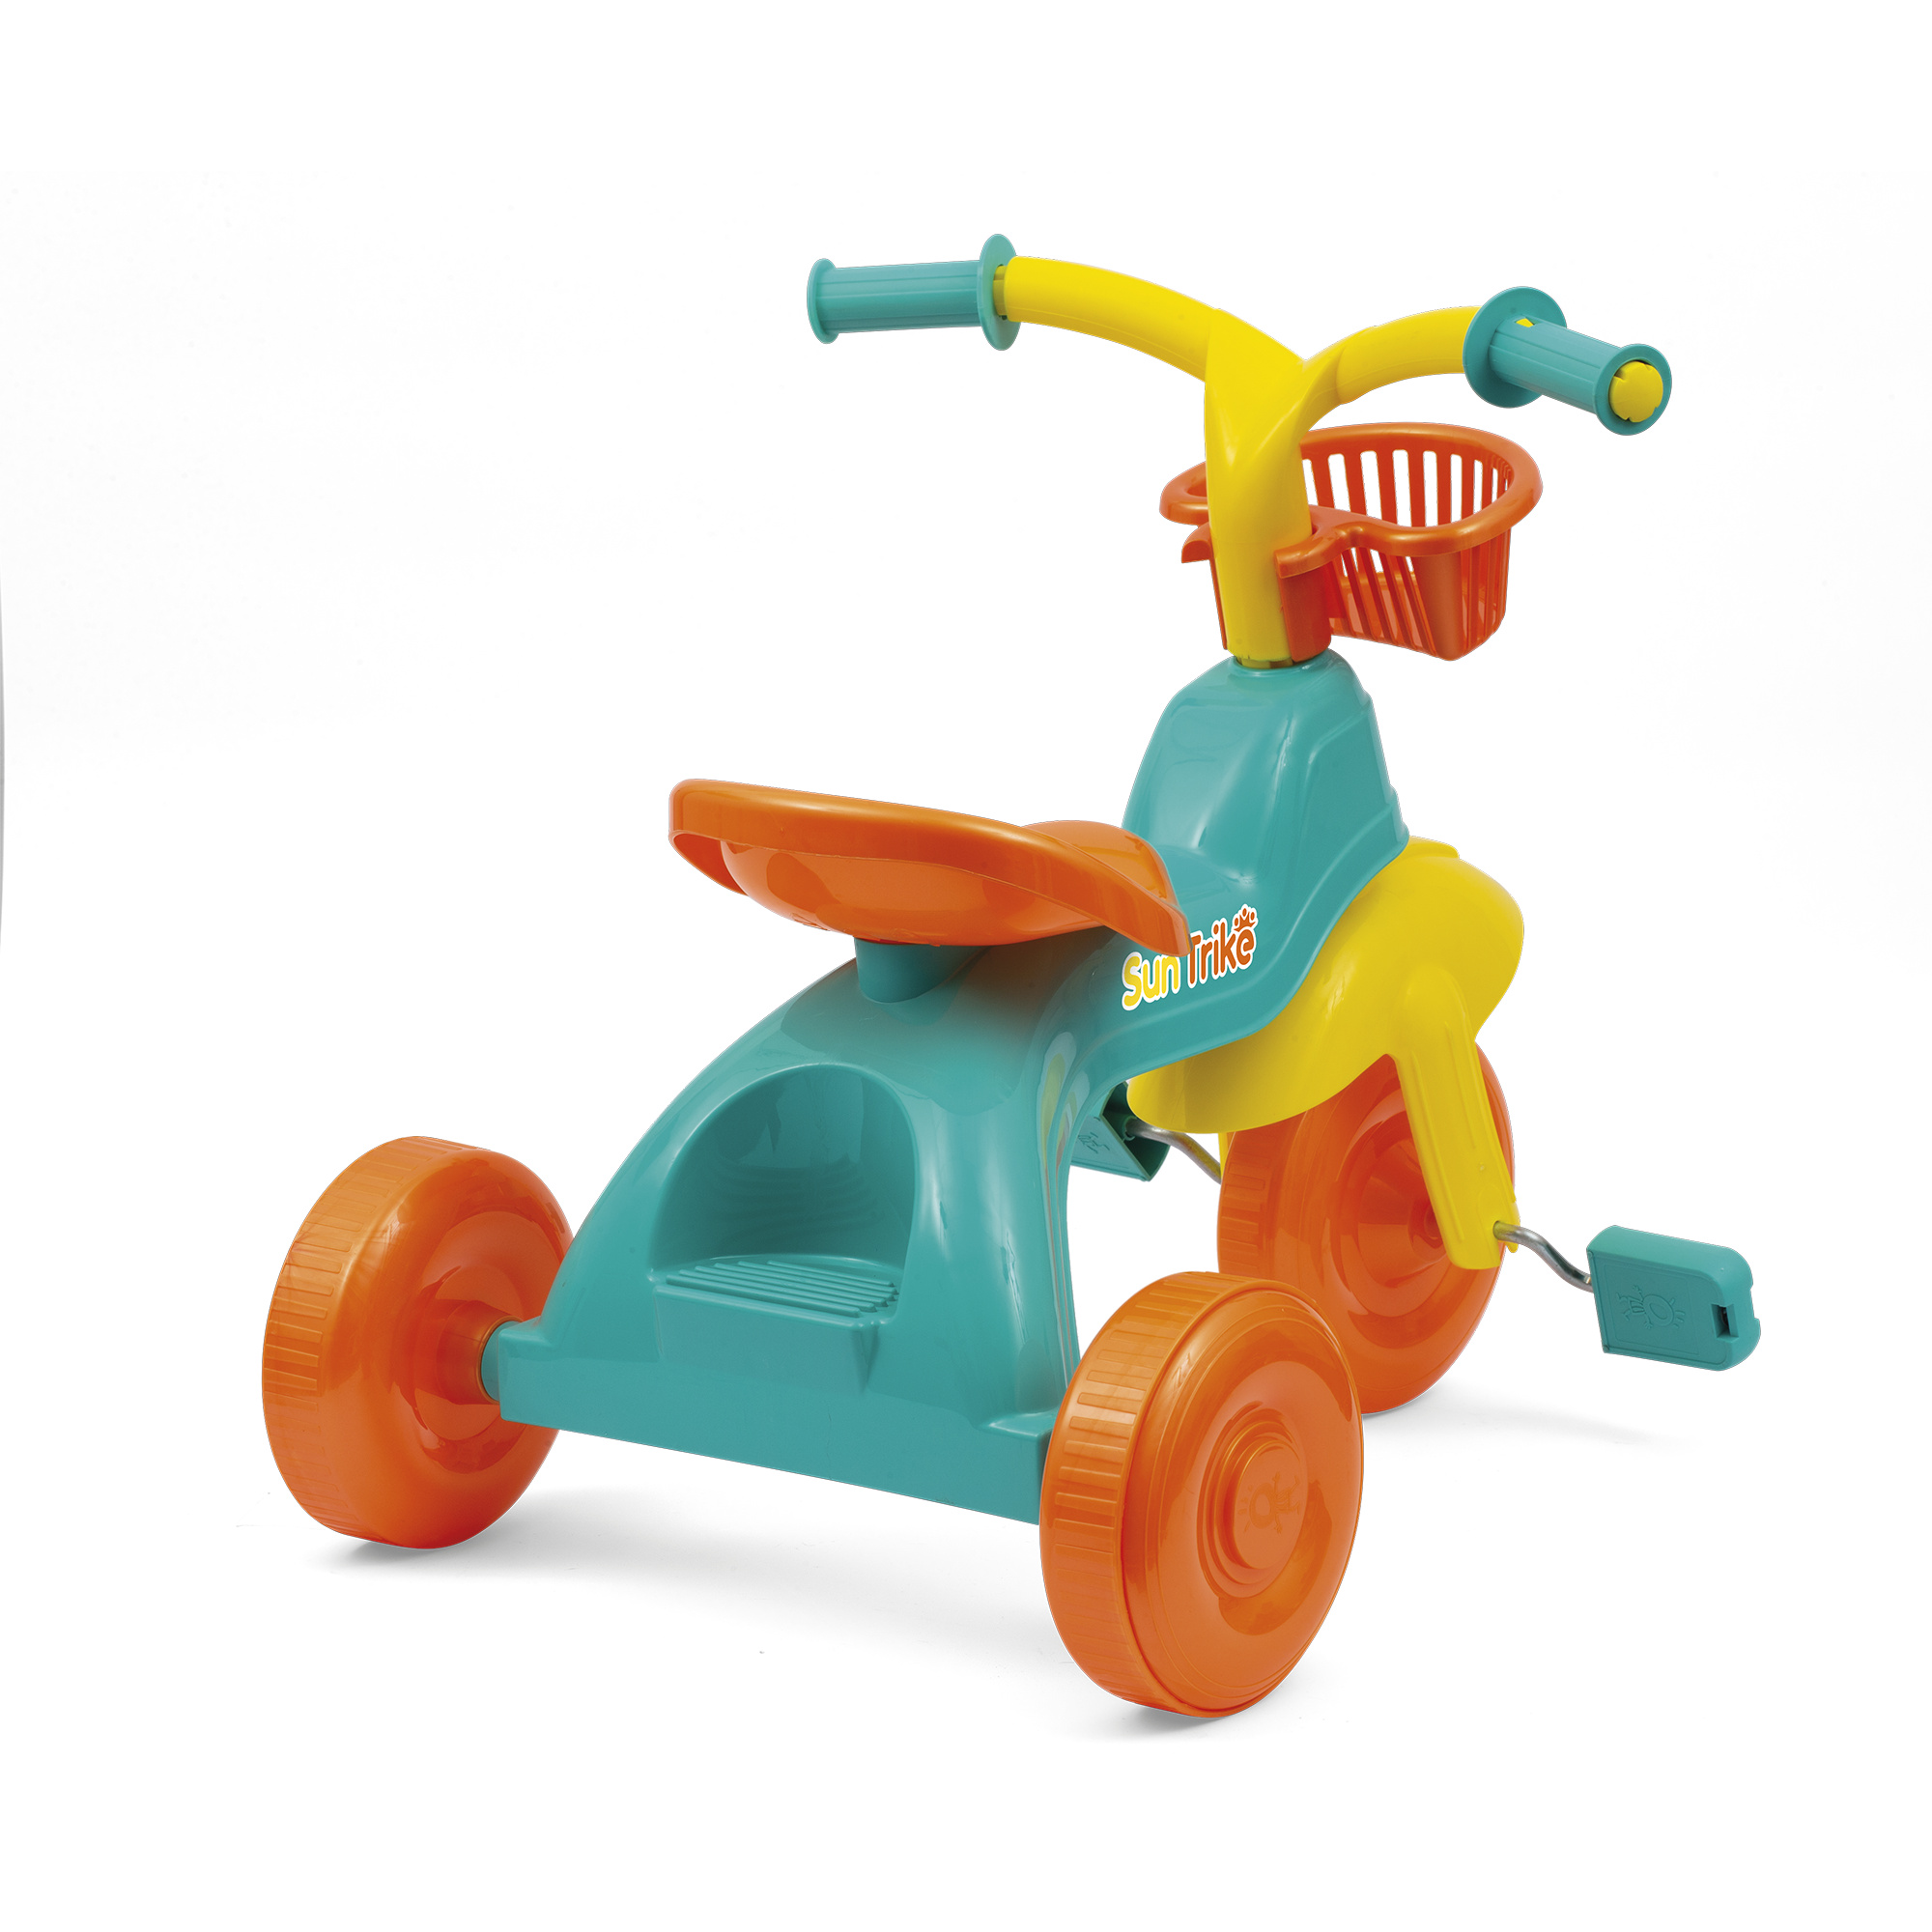 Fun trike - il tuo primo triciclo: pratico, leggero e colorato - con seggiolino regolabile e cesti portaoggetti - SUN&SPORT